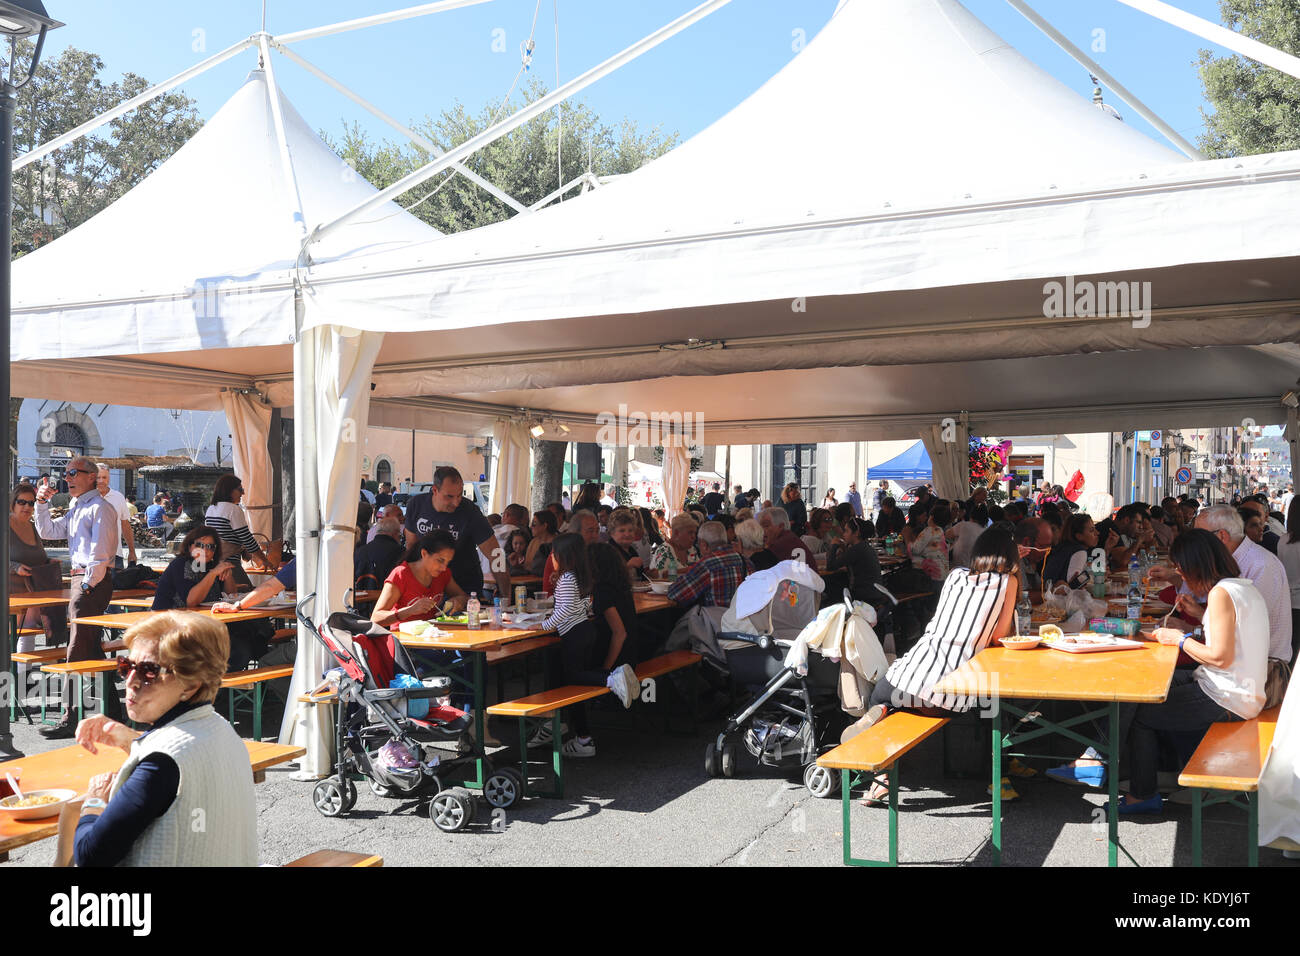 MANZIANA, Latium, Italien - Oktober 14, 2017: Die Menschen feiern im Freien eine der beliebtesten und erwartete lokale Veranstaltungen, das Festival der lokalen Stockfoto